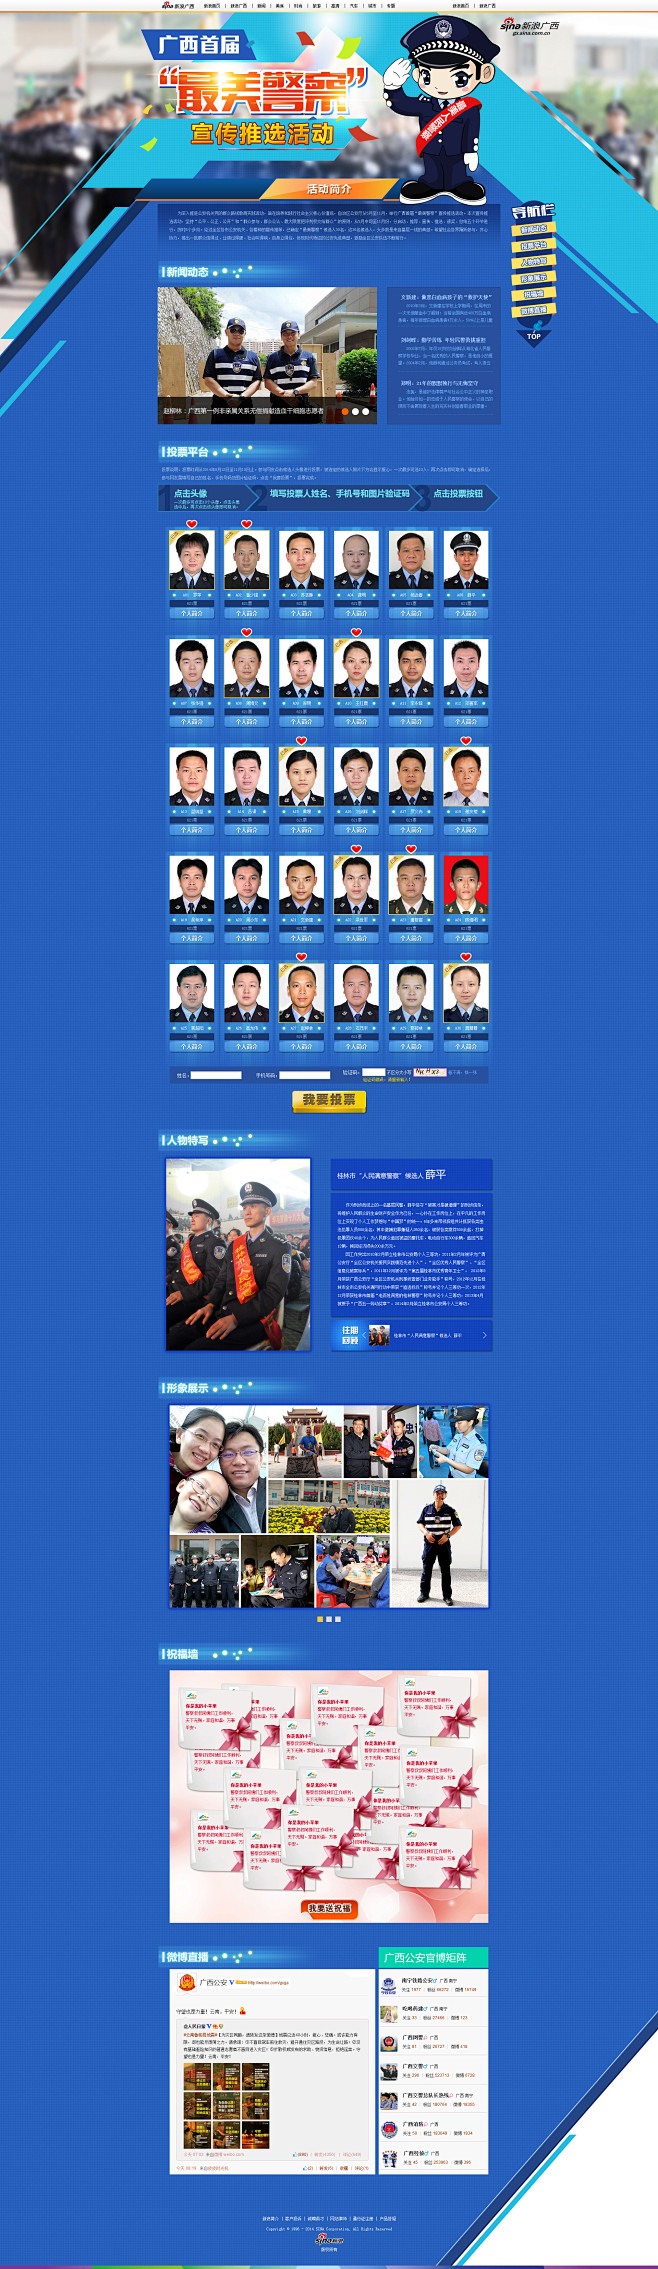 广西首届“最美警察”宣传推选活动专题